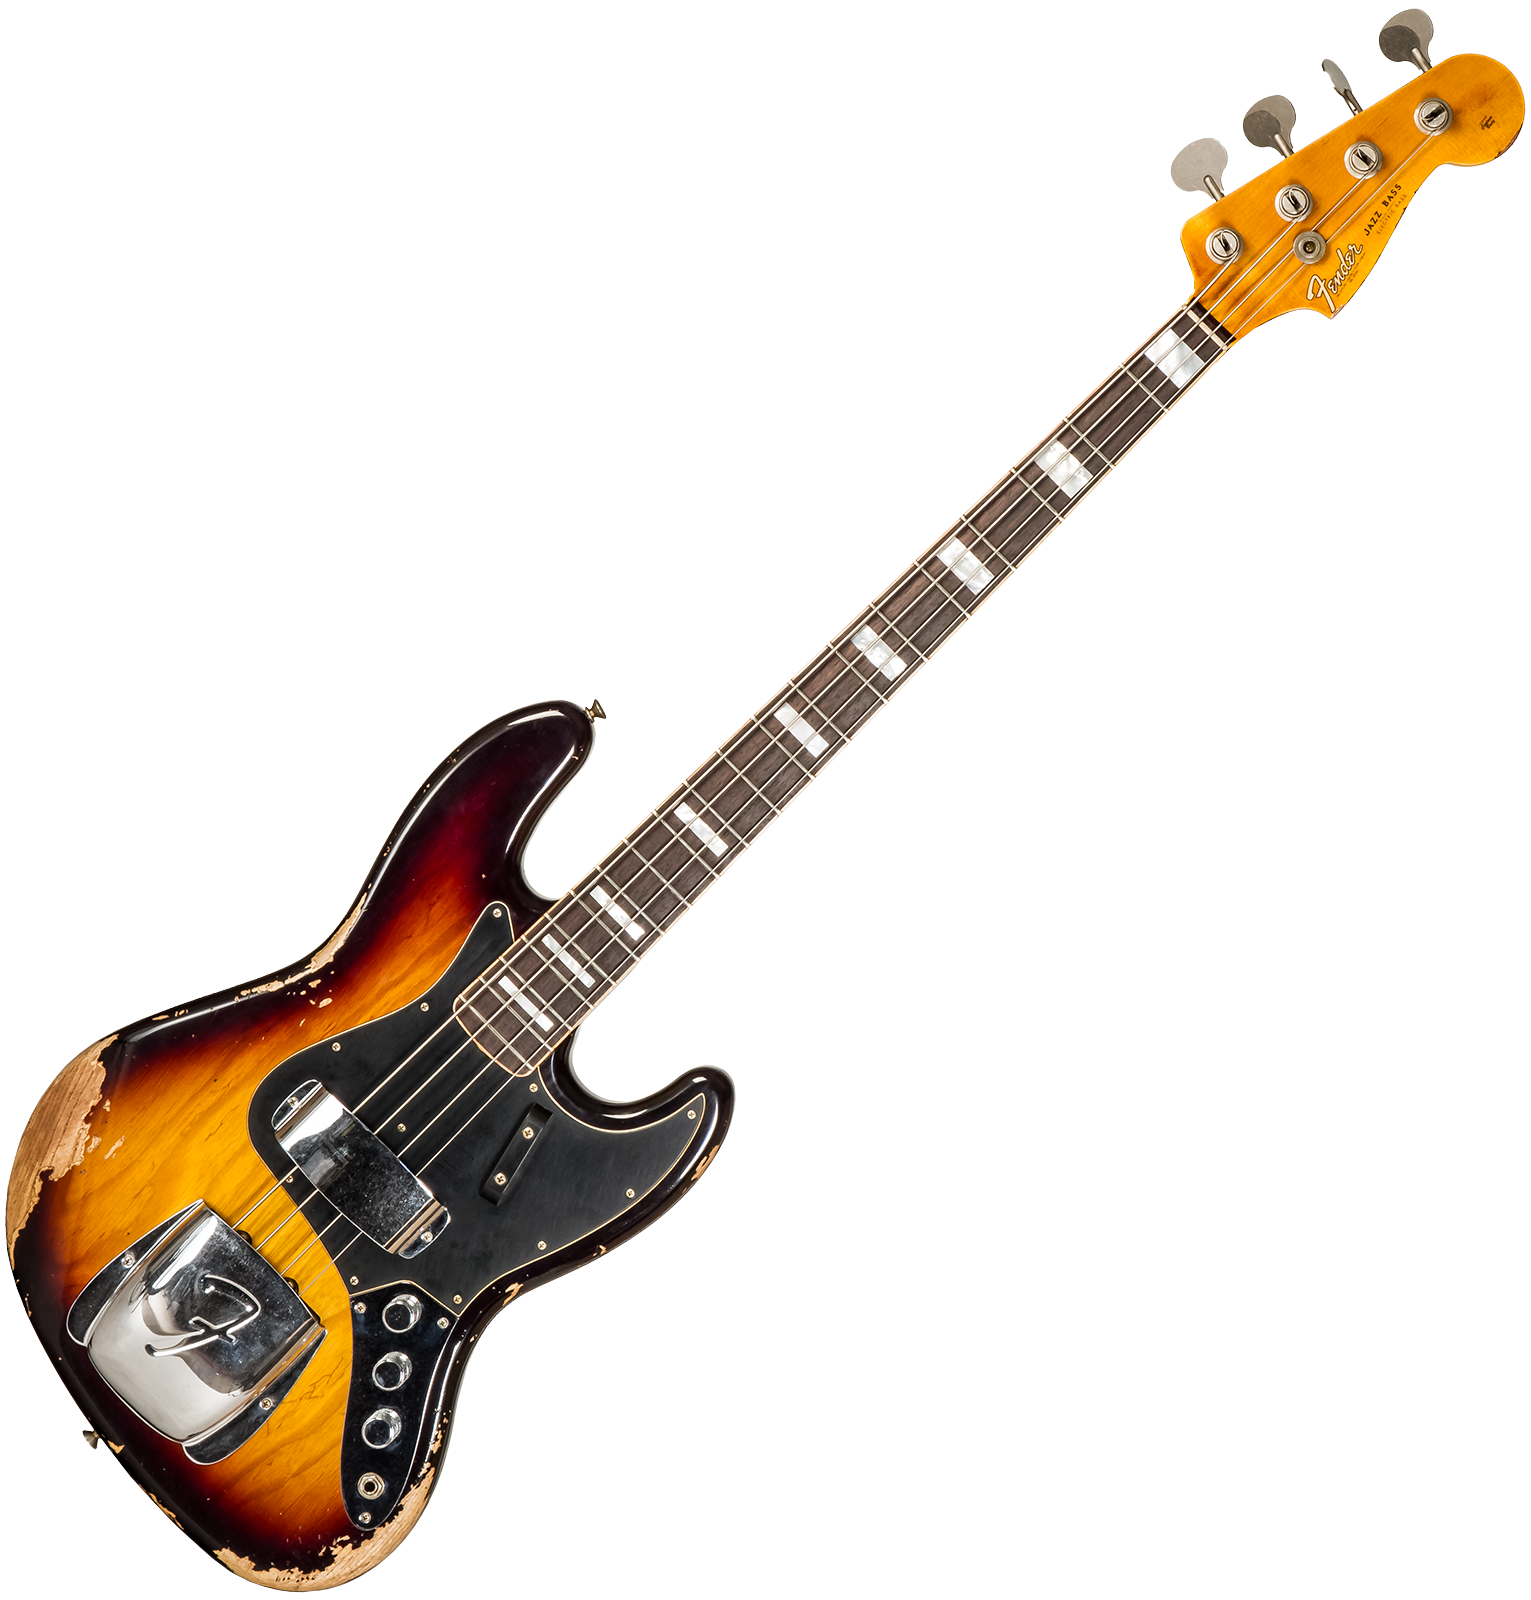 Fender Custom Shop Jazz Bass Custom Rw #cz575919 - Heavy Relic 3-color Sunburst - Bajo eléctrico de cuerpo sólido - Variation 1